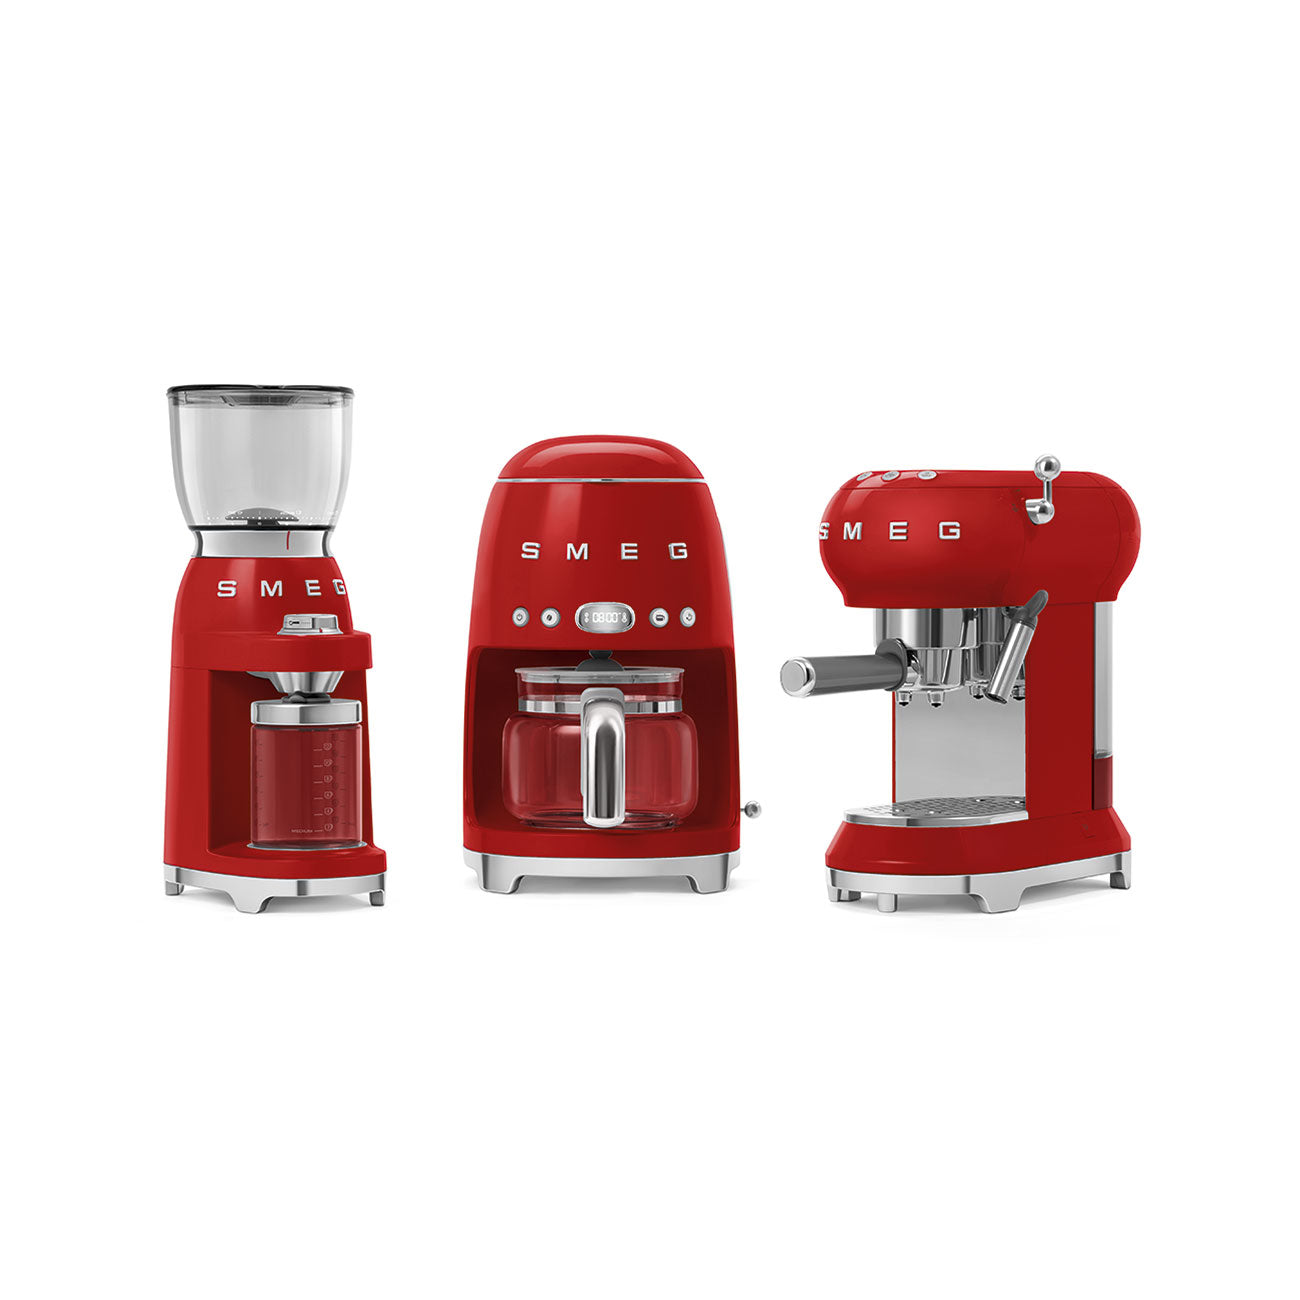 Coffee grinder smeg rojo - CGF01RDUS